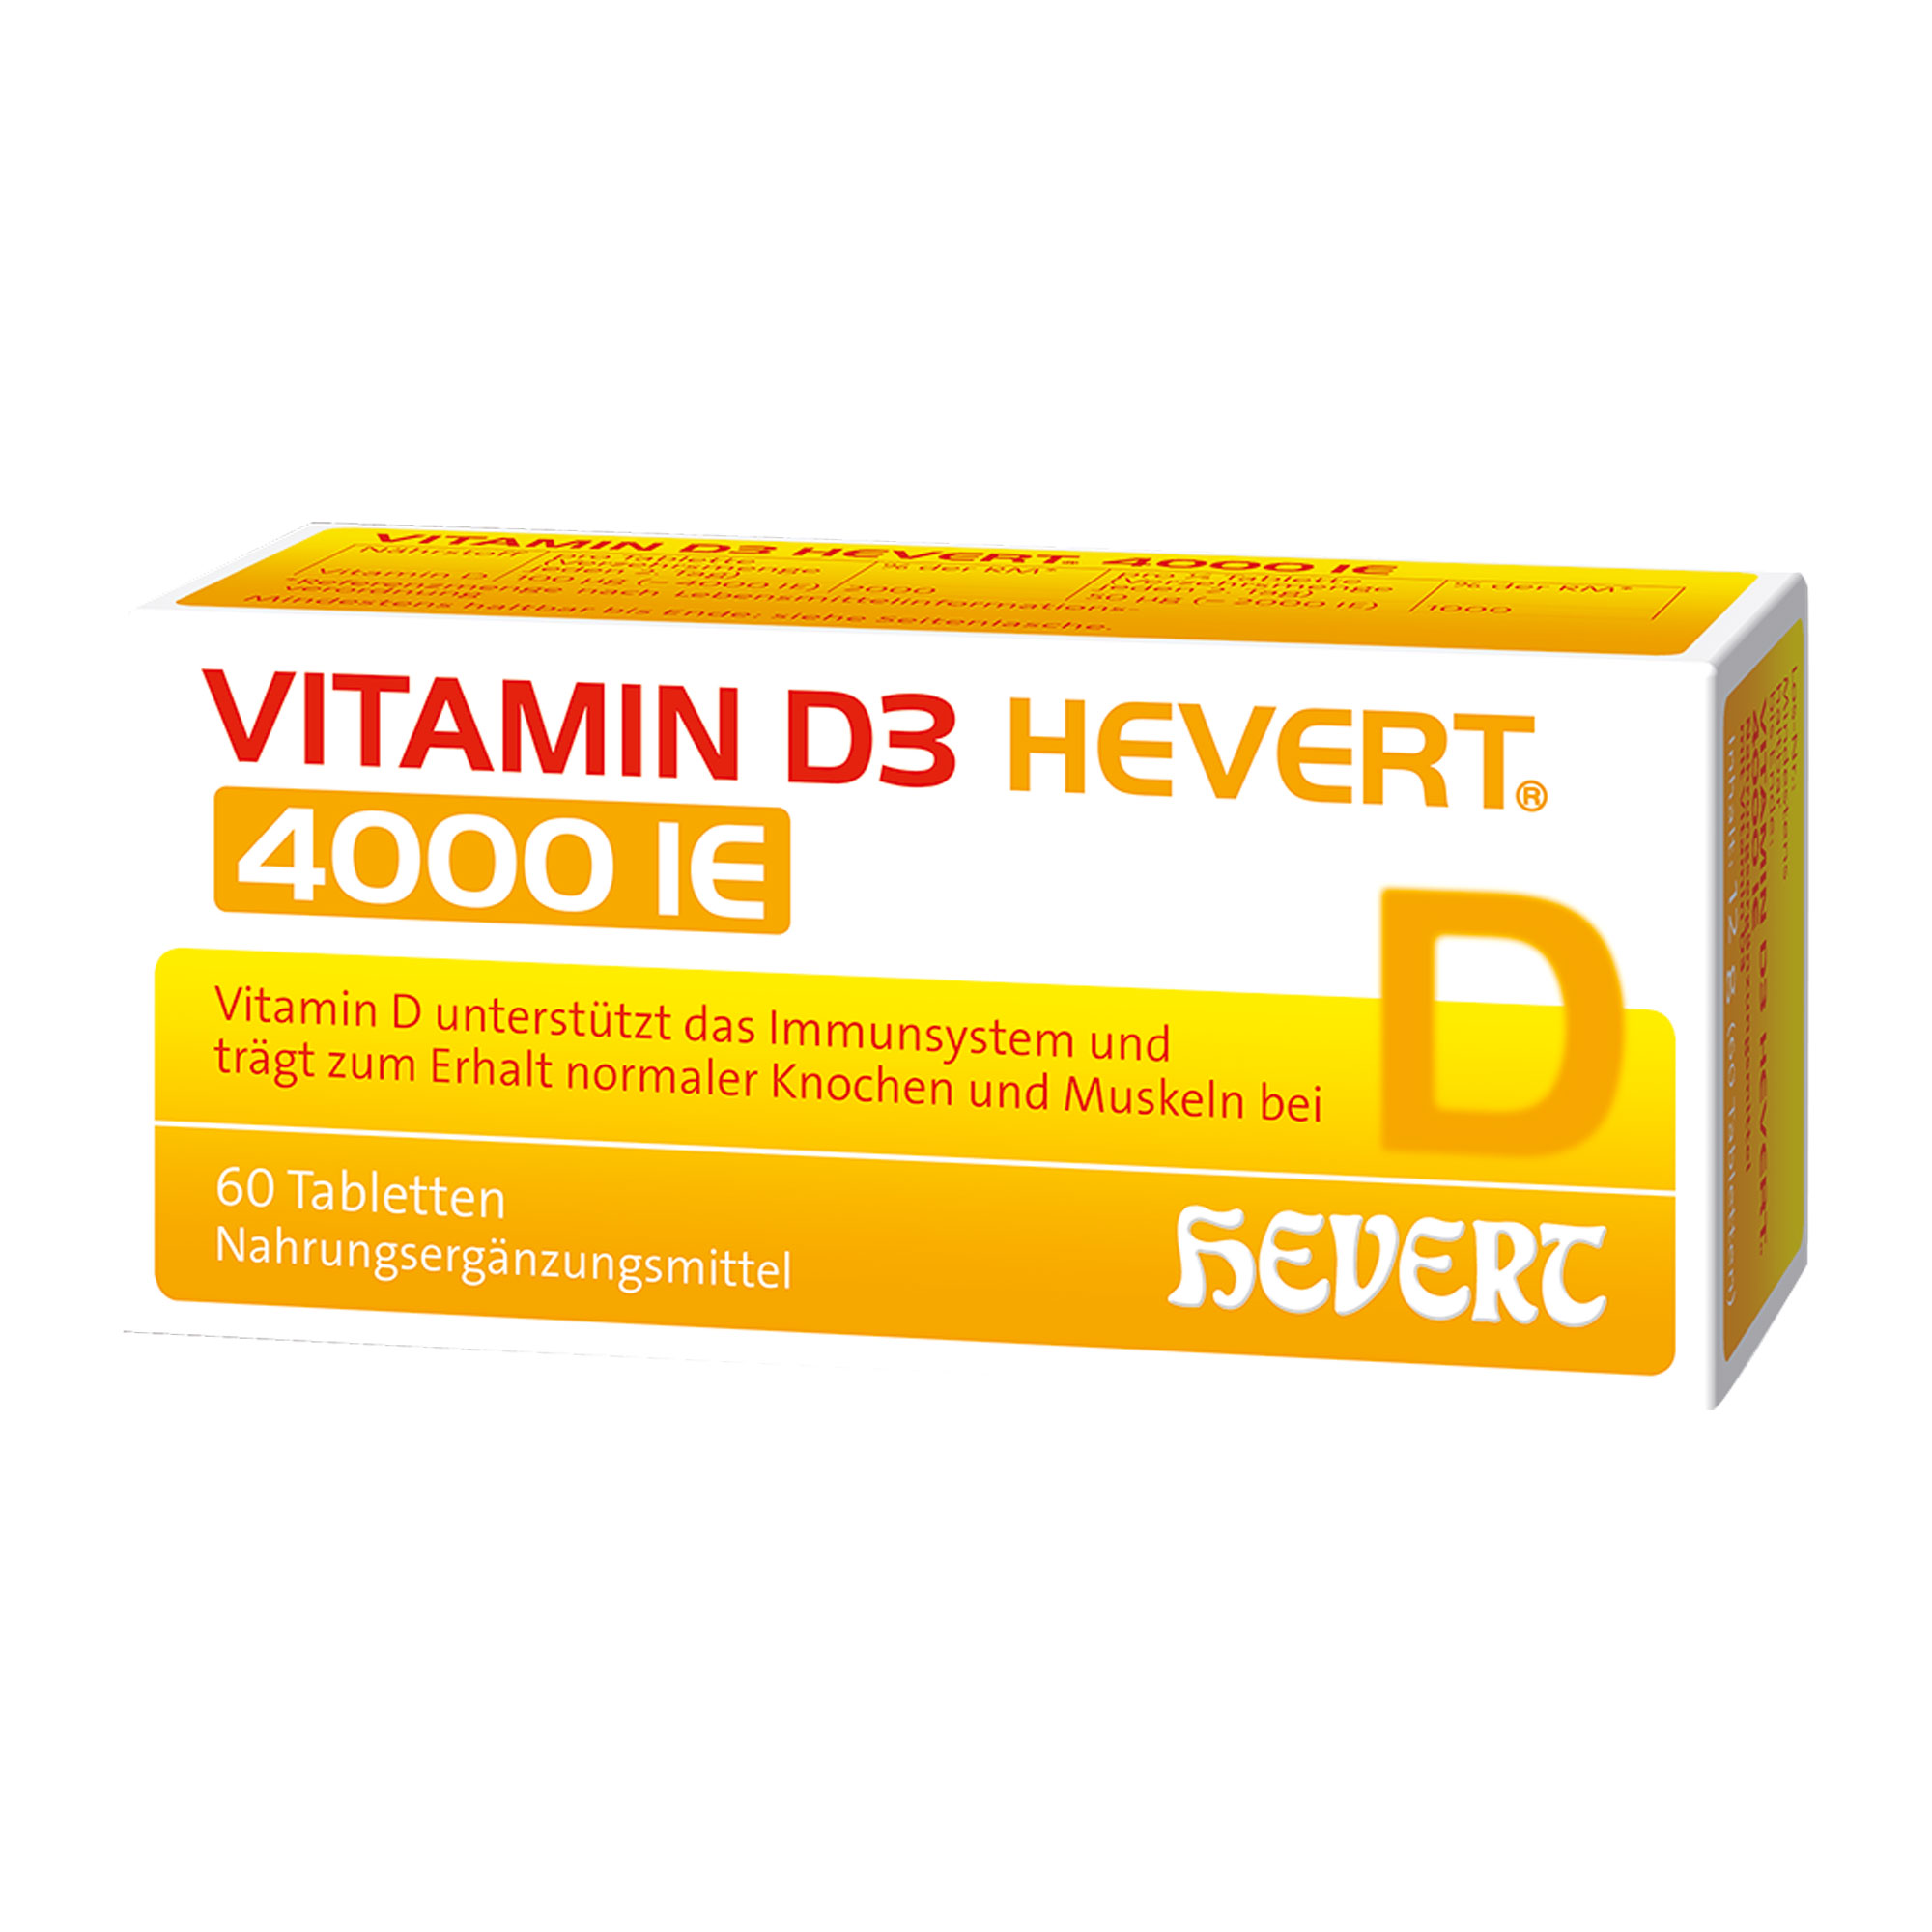 Nahrungsergänzungsmittel zur Behandlung und Vorbeugung von Vitamin D-Mangelerkrankungen.